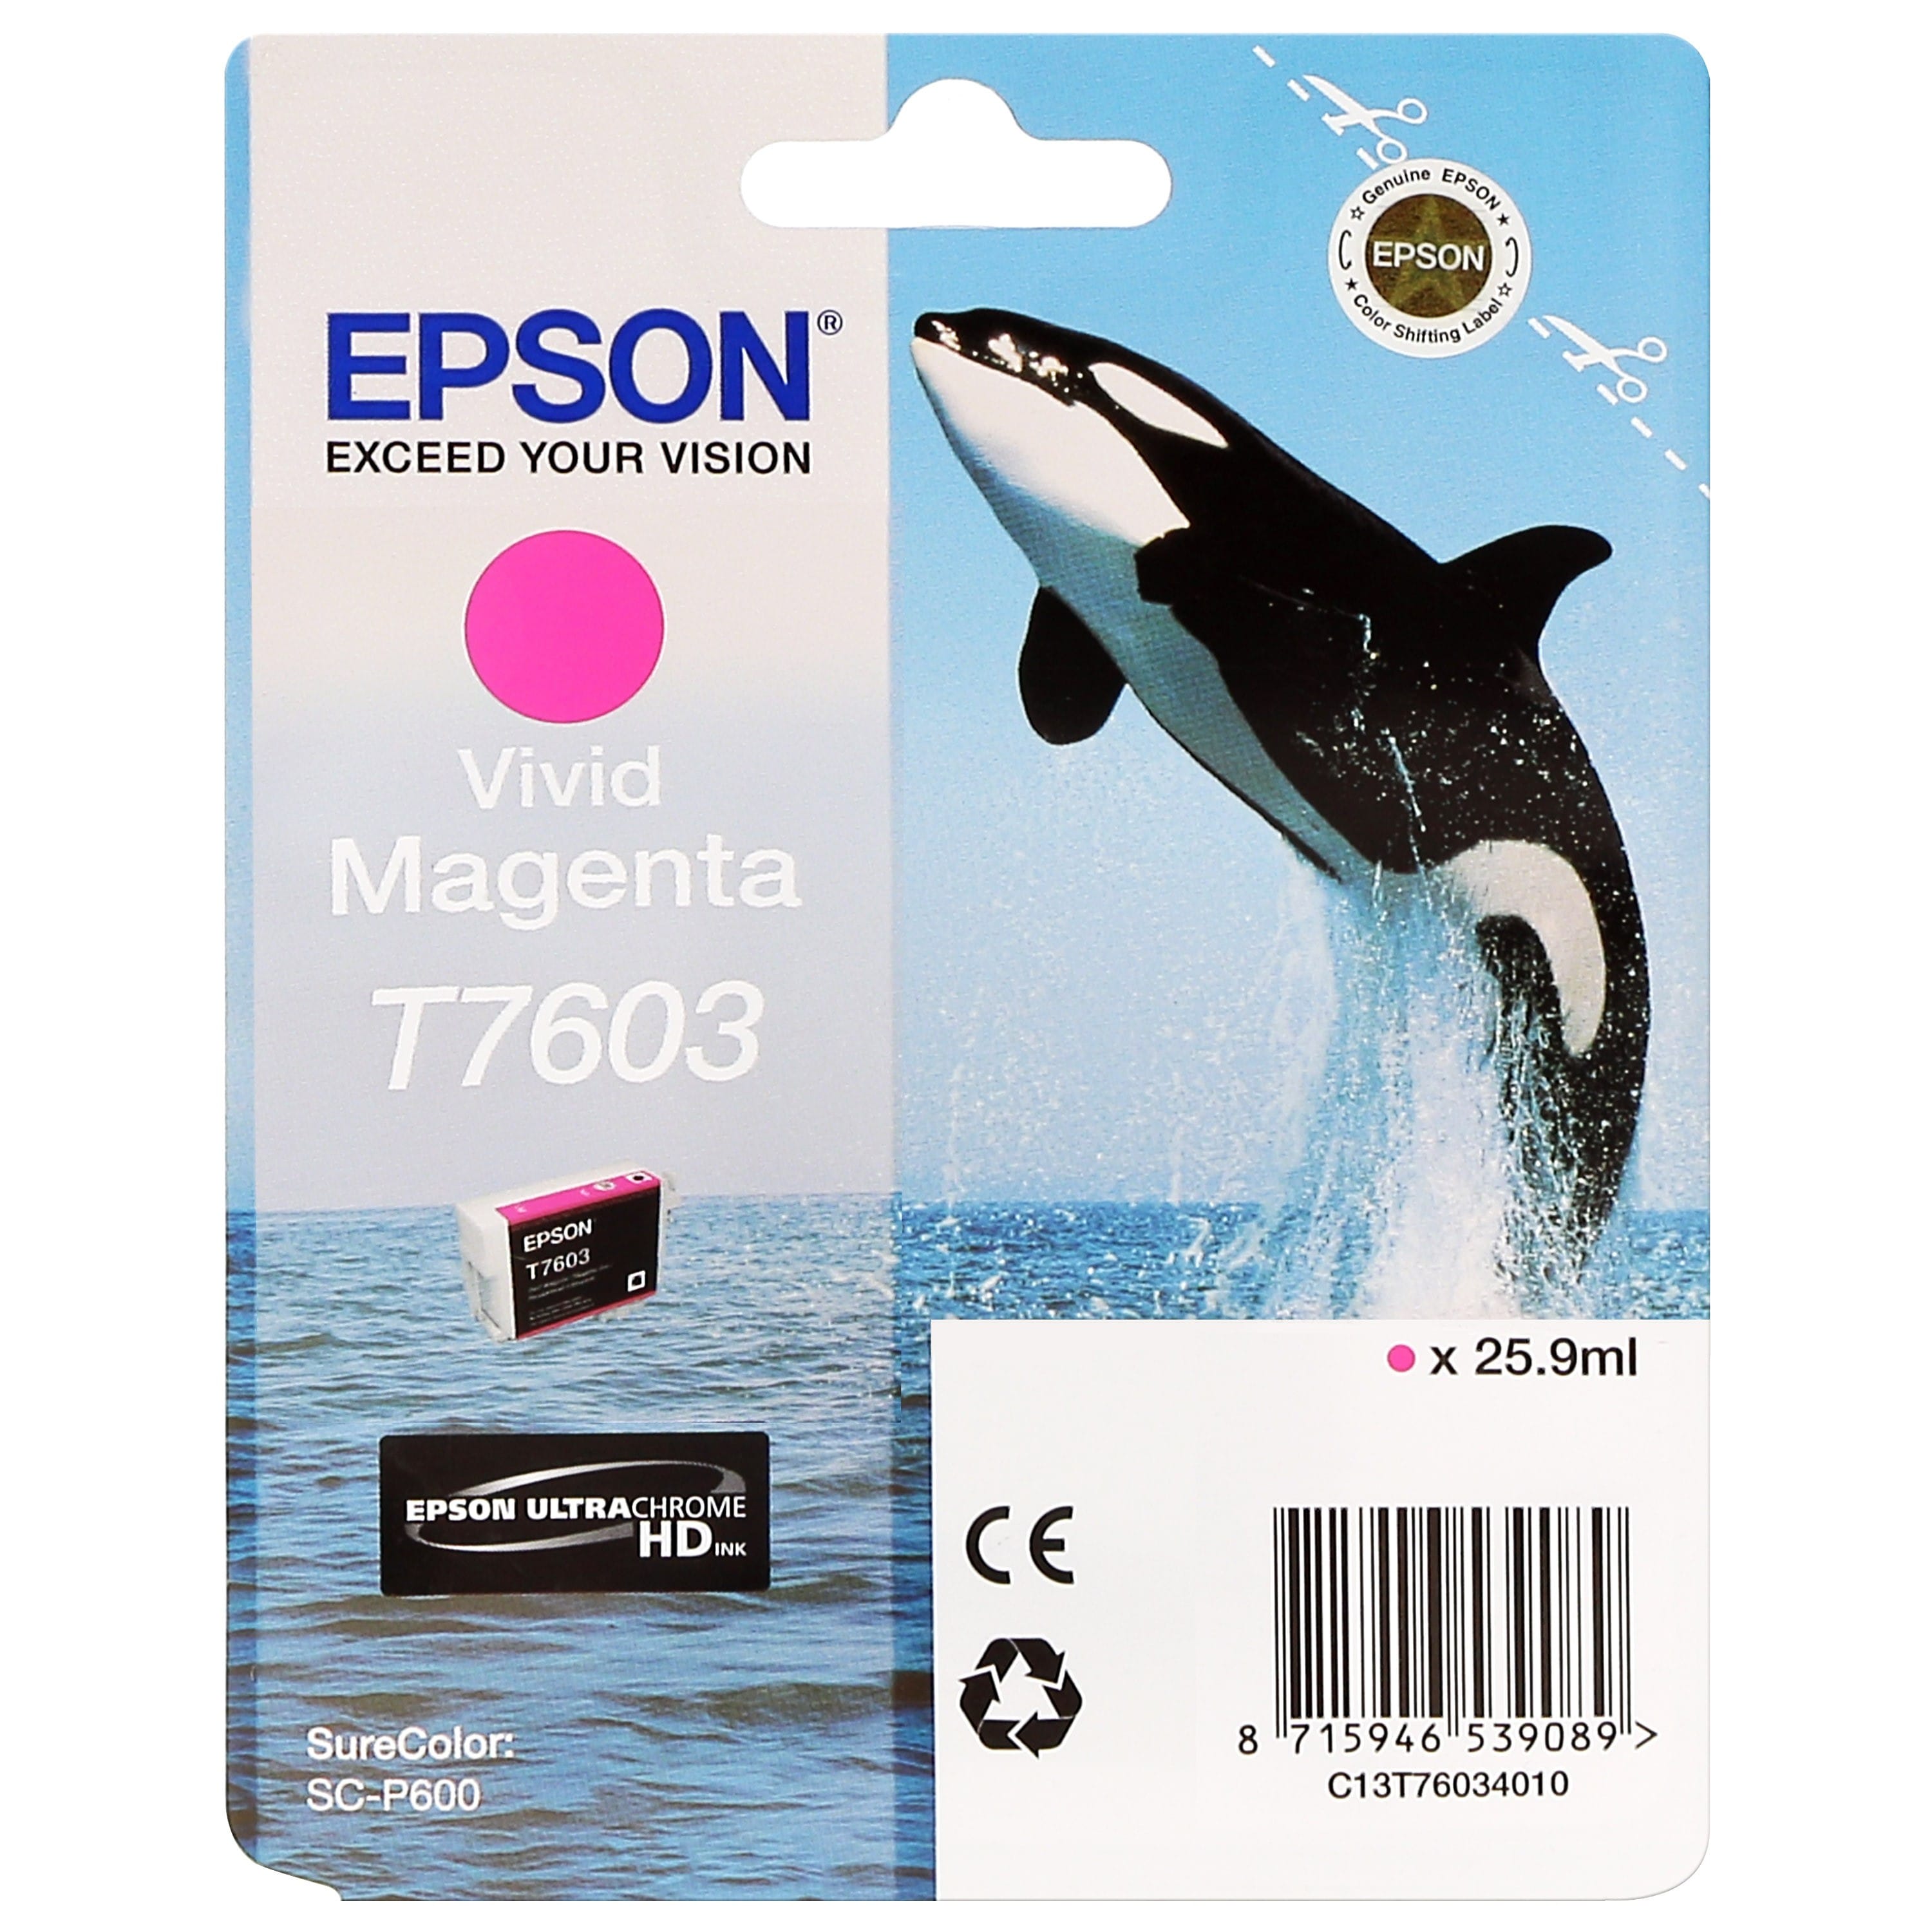 EPSON - Cartouche d'encre traceur SC-P600 - Vivid magenta - 25,9ml - T7603